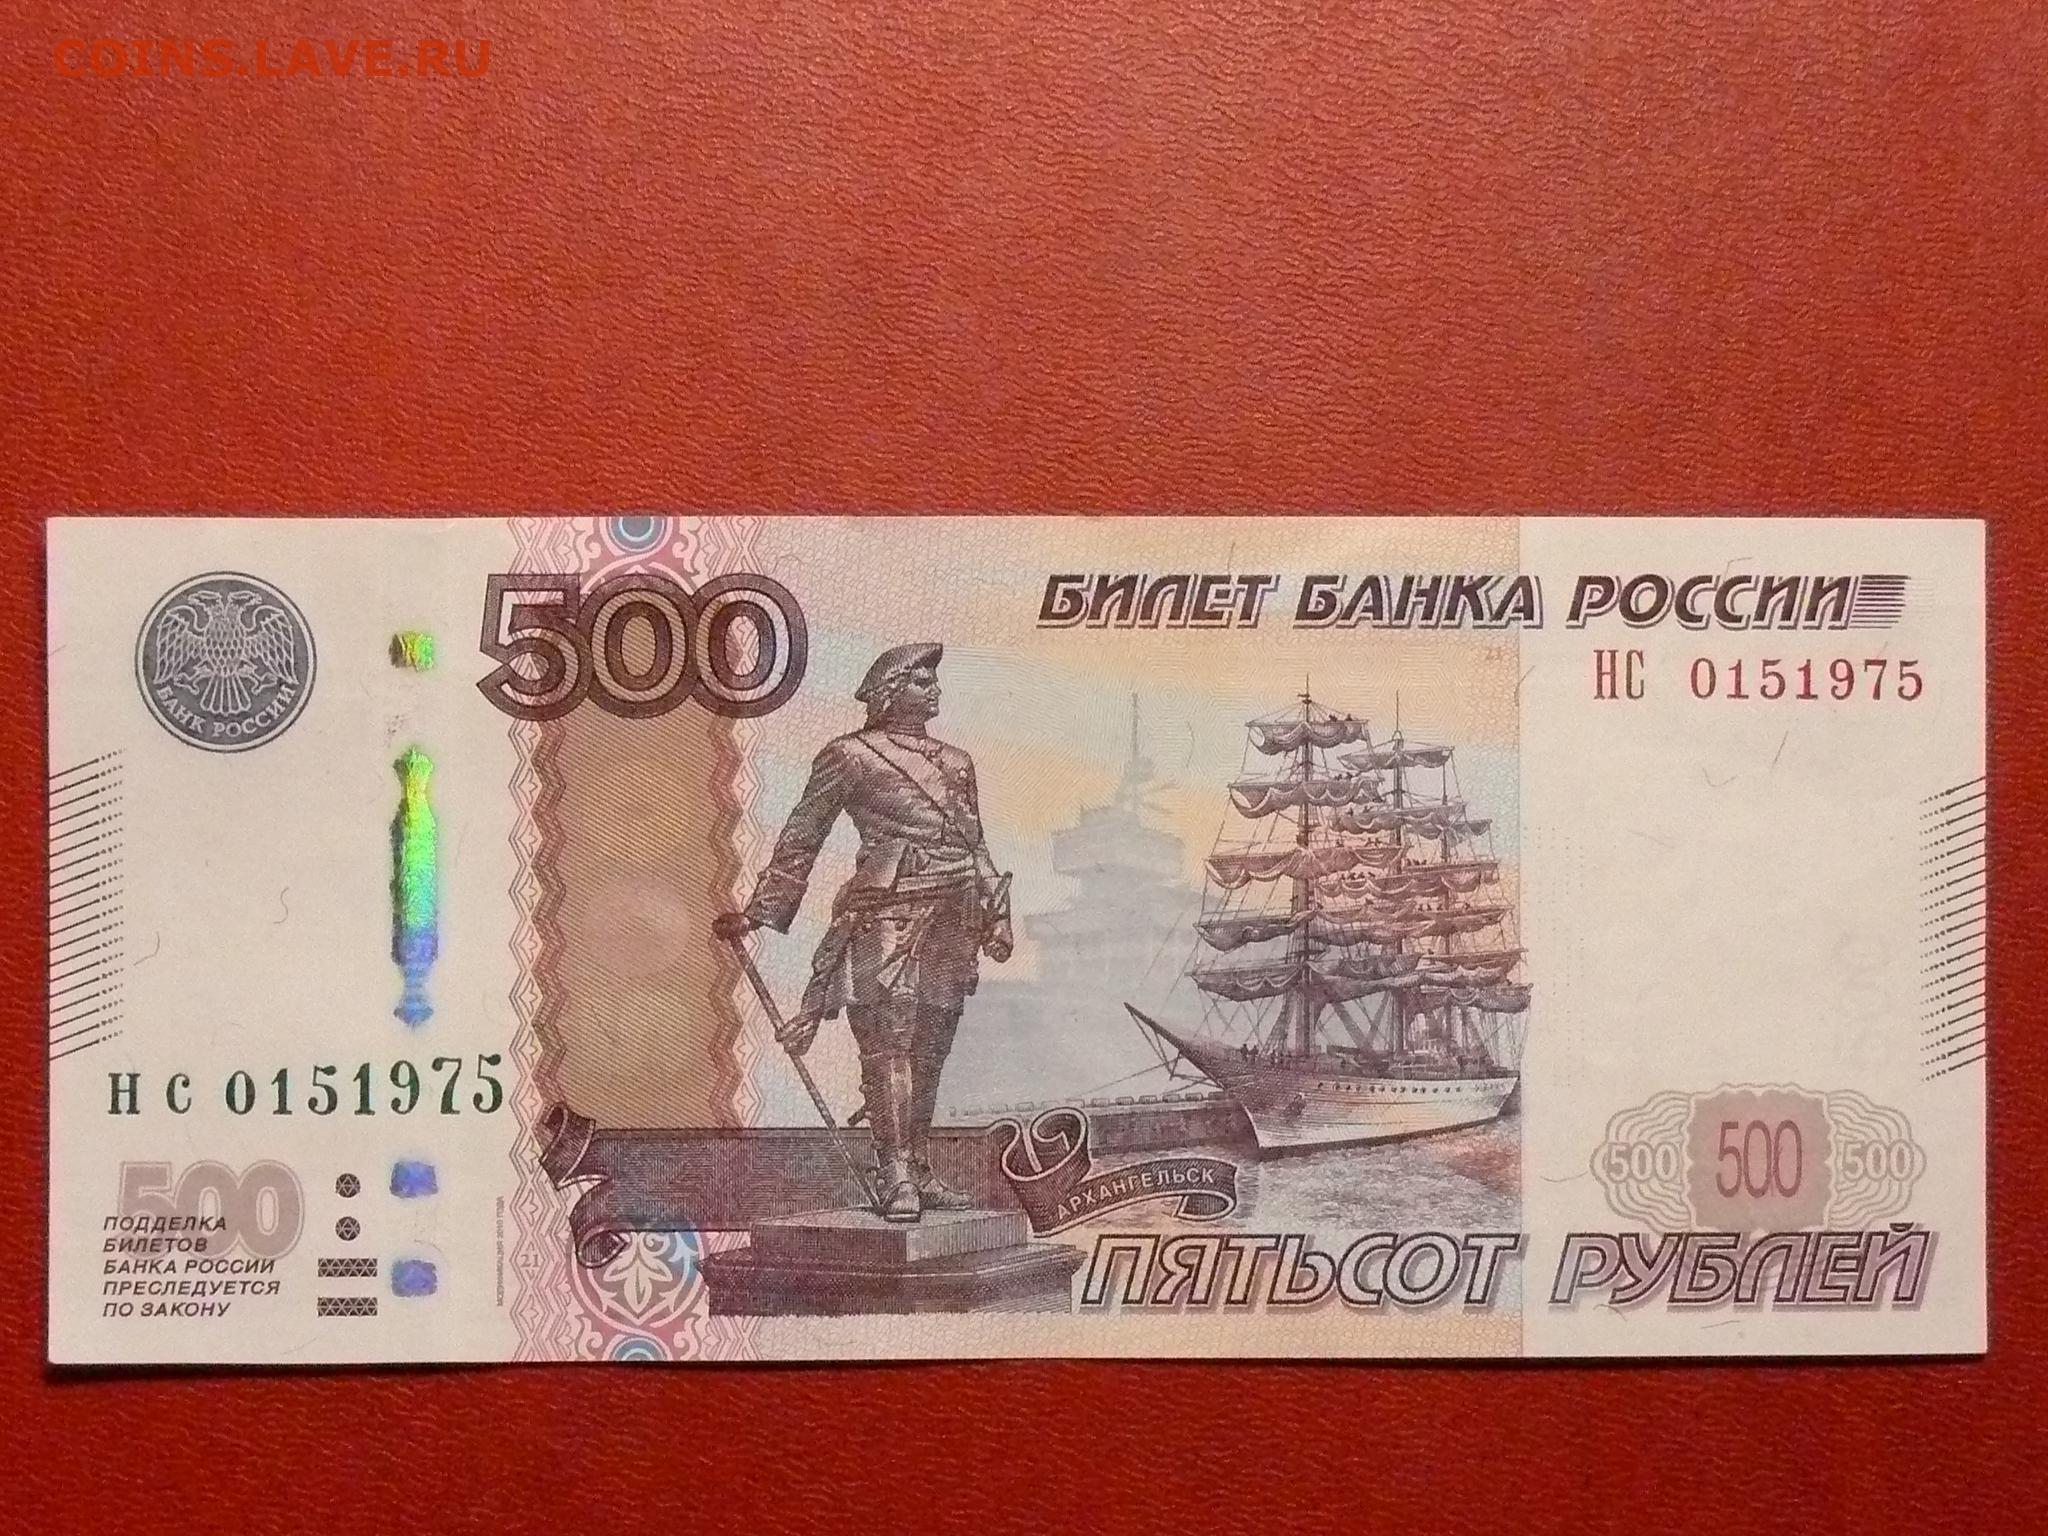 500 рублей номер. Купюра 500 рублей. Банкнота 500 рублей. Номер купюры. Красивые номера на банкнотах.